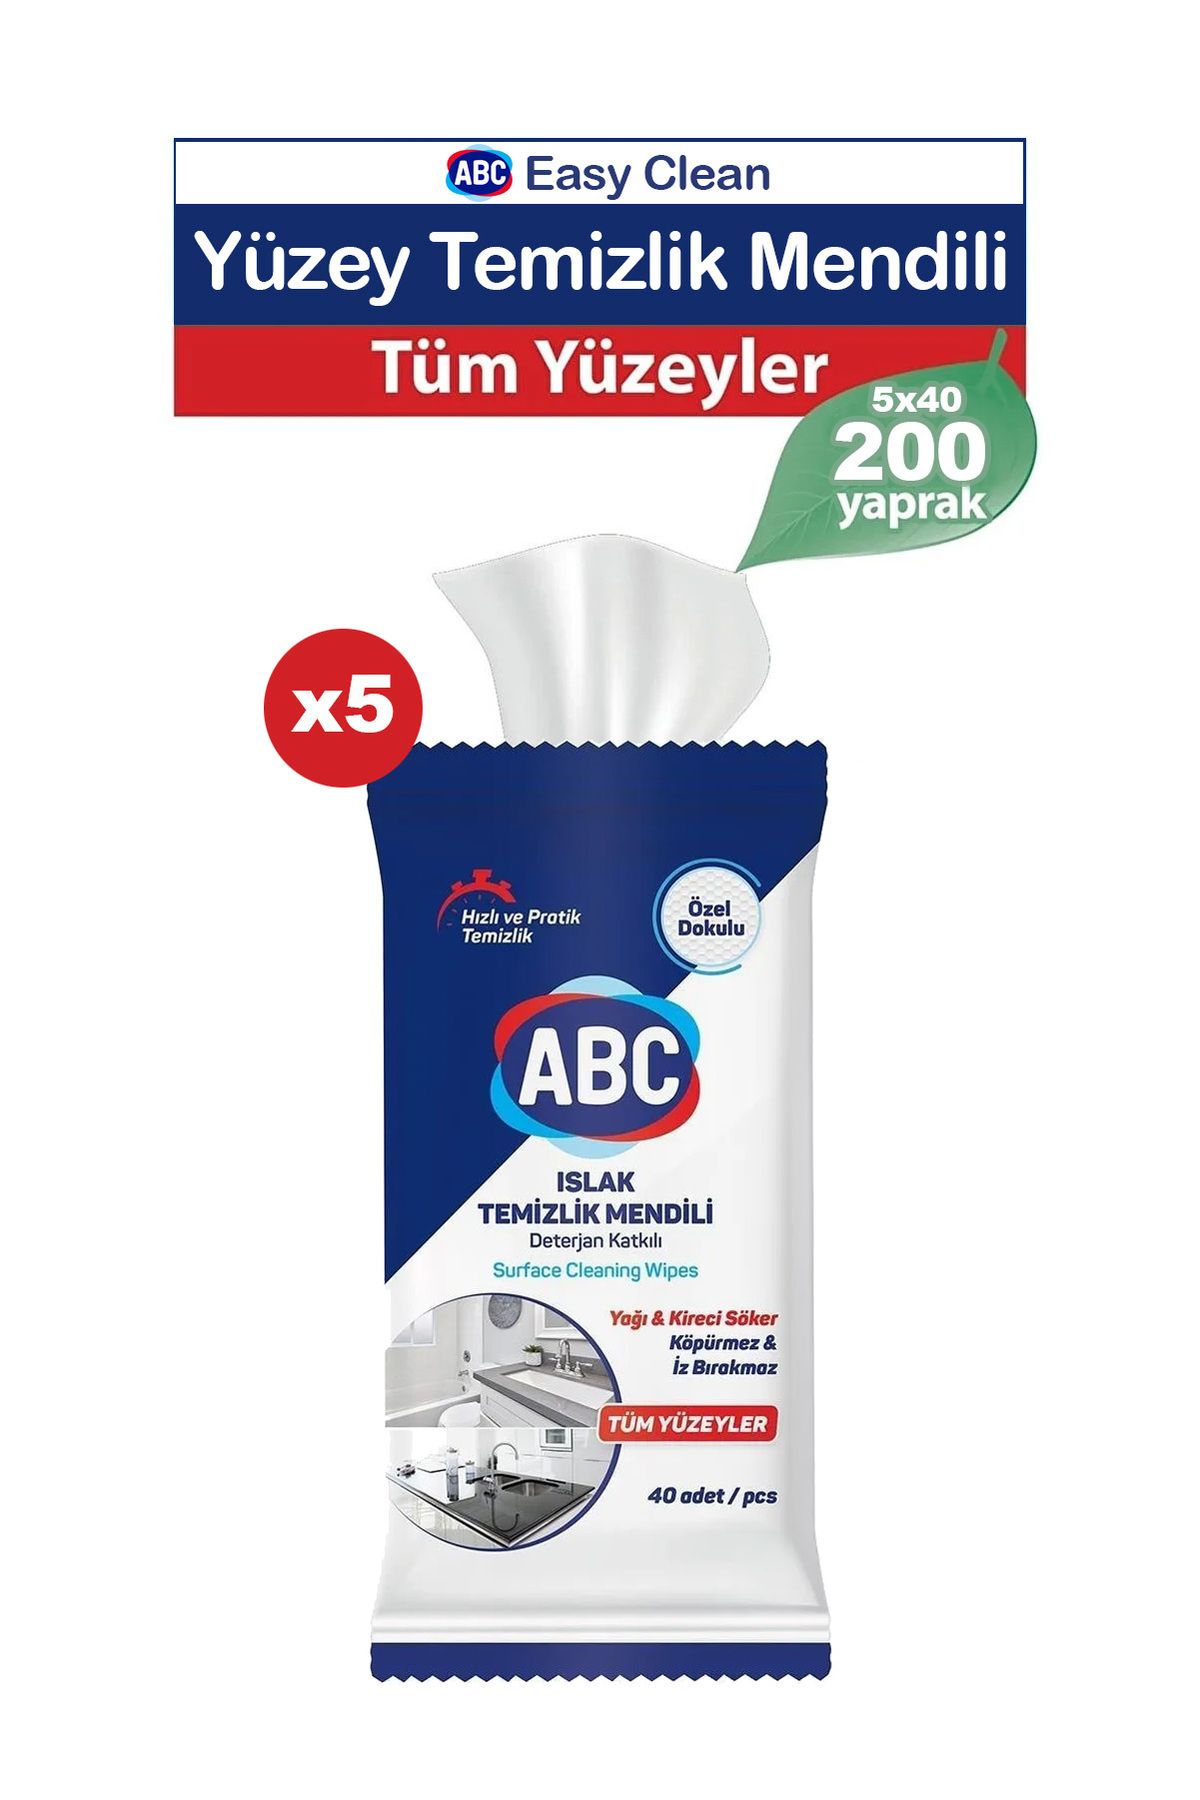 ABC Easy Clean Yüzey Temizleme Havlusu 200 yaprak